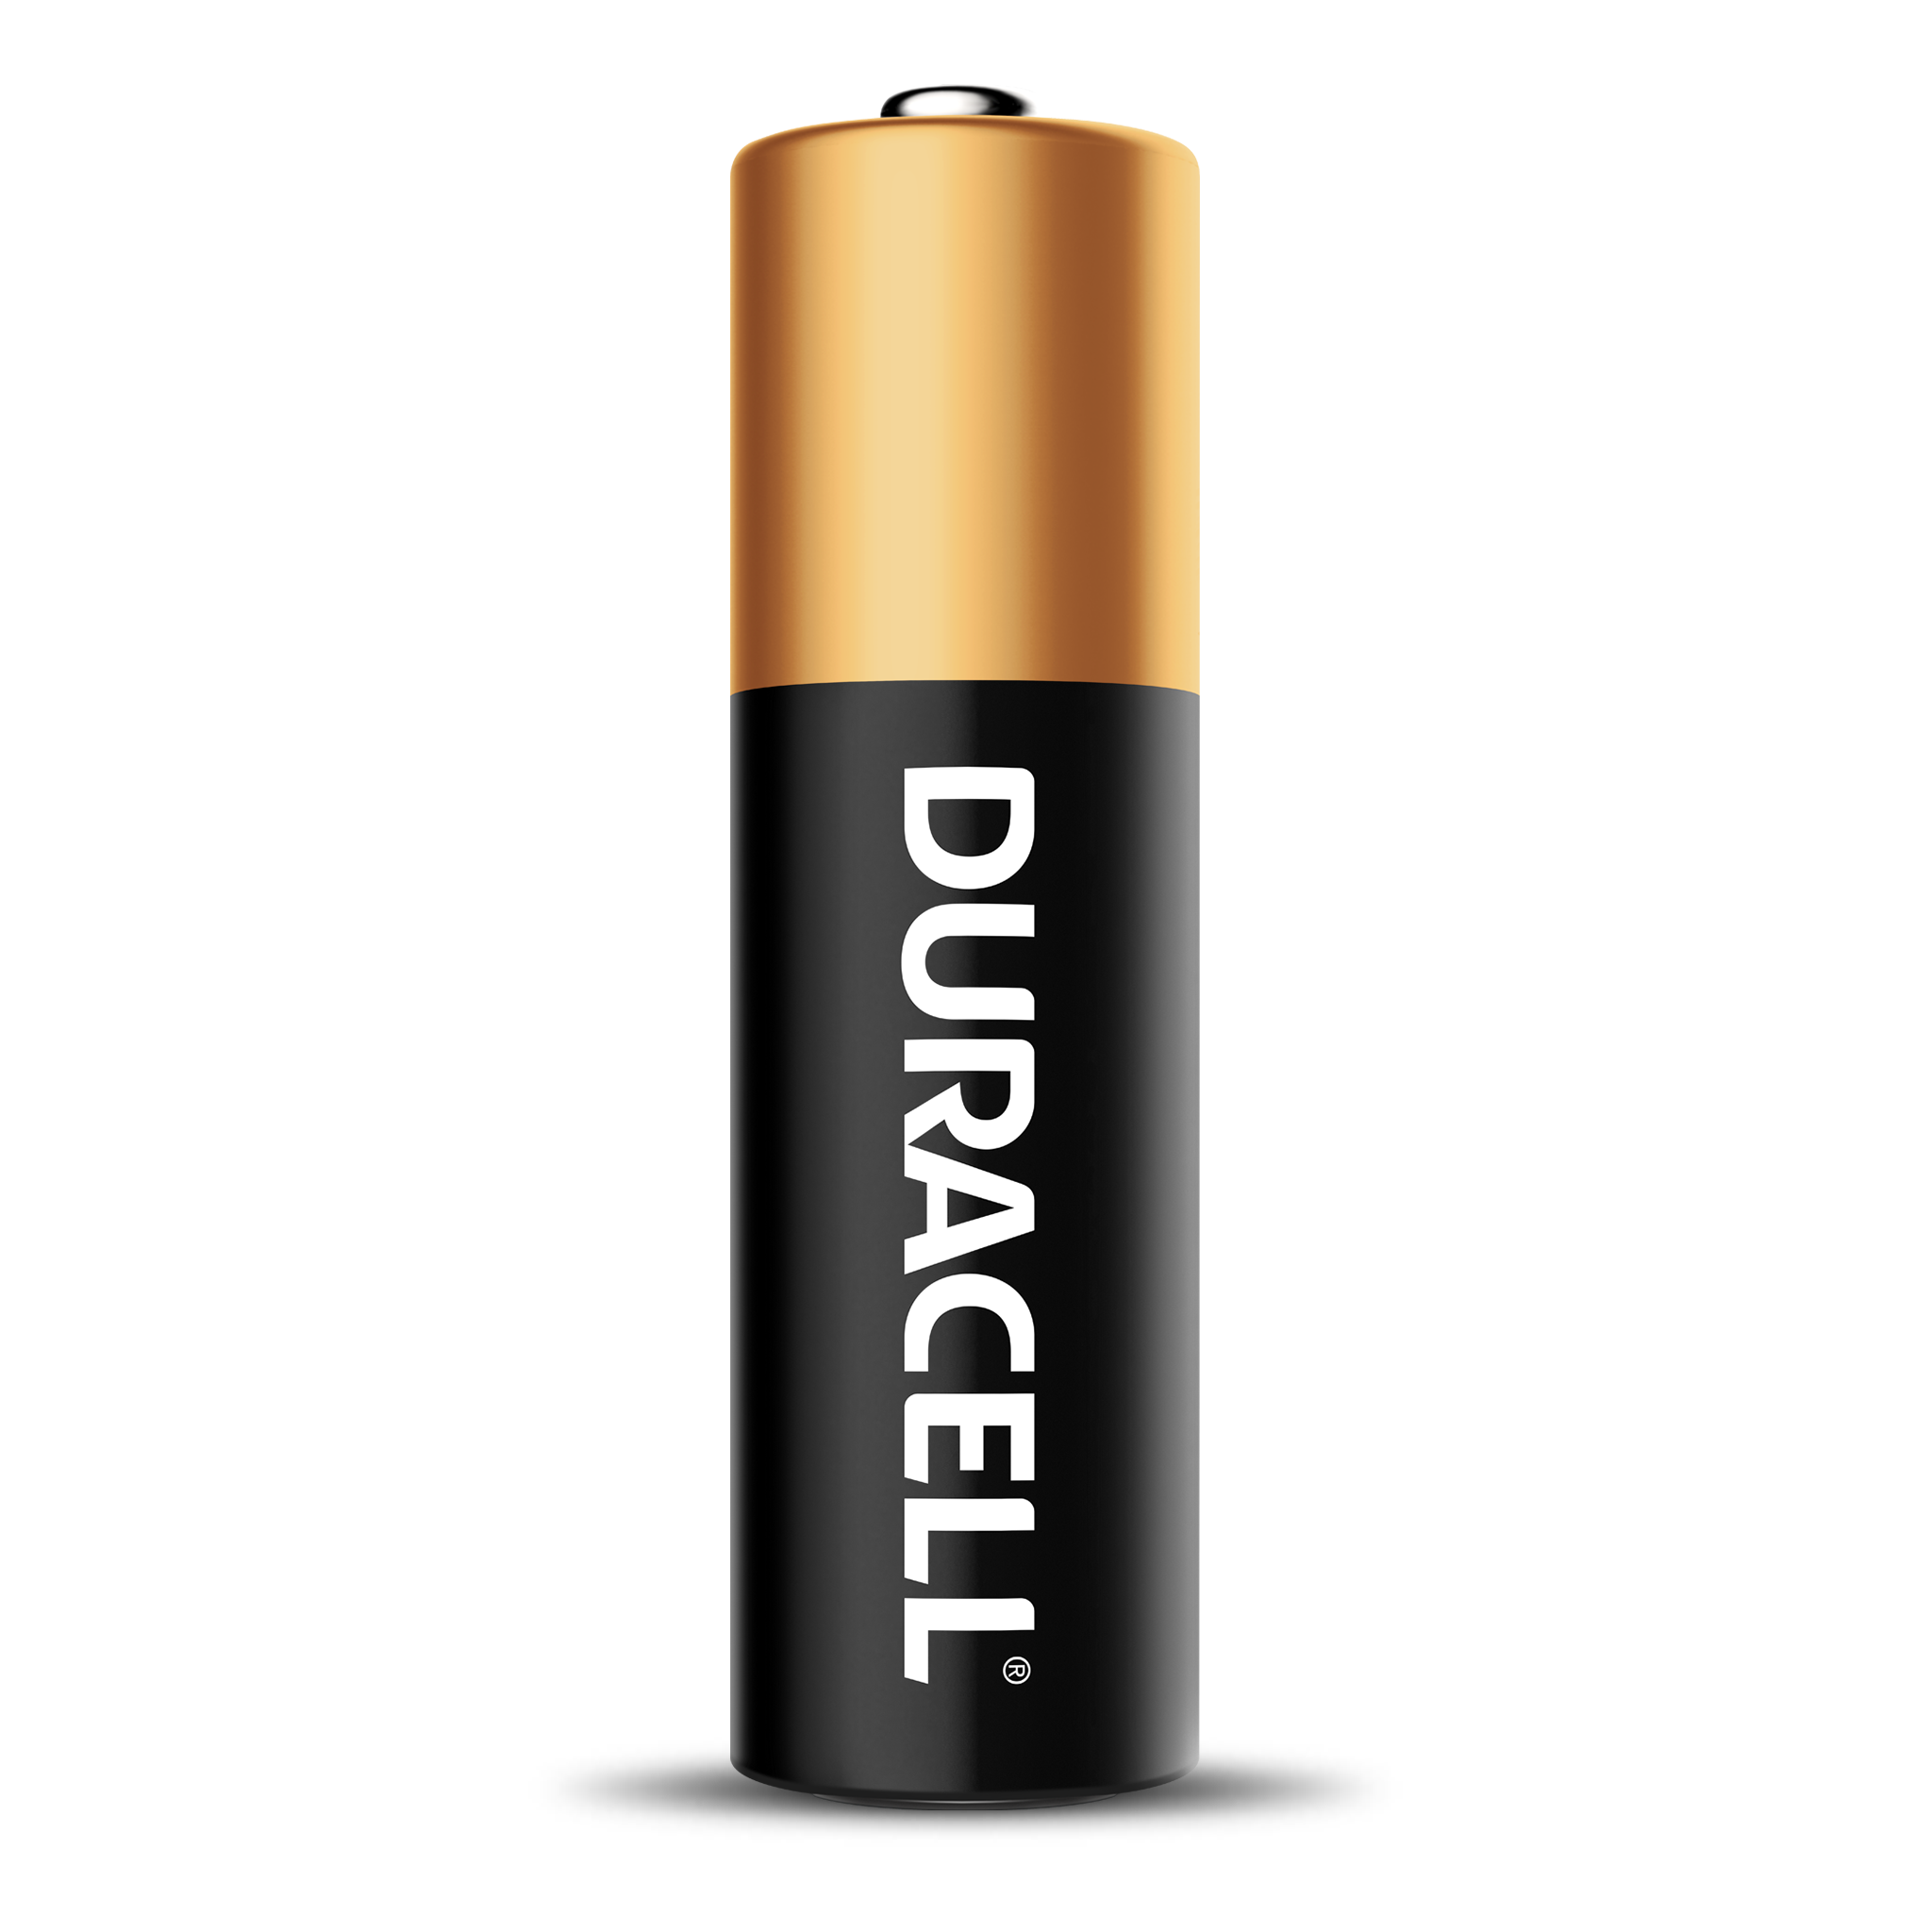 Duracell - Pilas AA Optimum, 28 unidades + Paquete de 16 unidades de pilas  alcalinas doble A Coppertop - 44 unidades en total